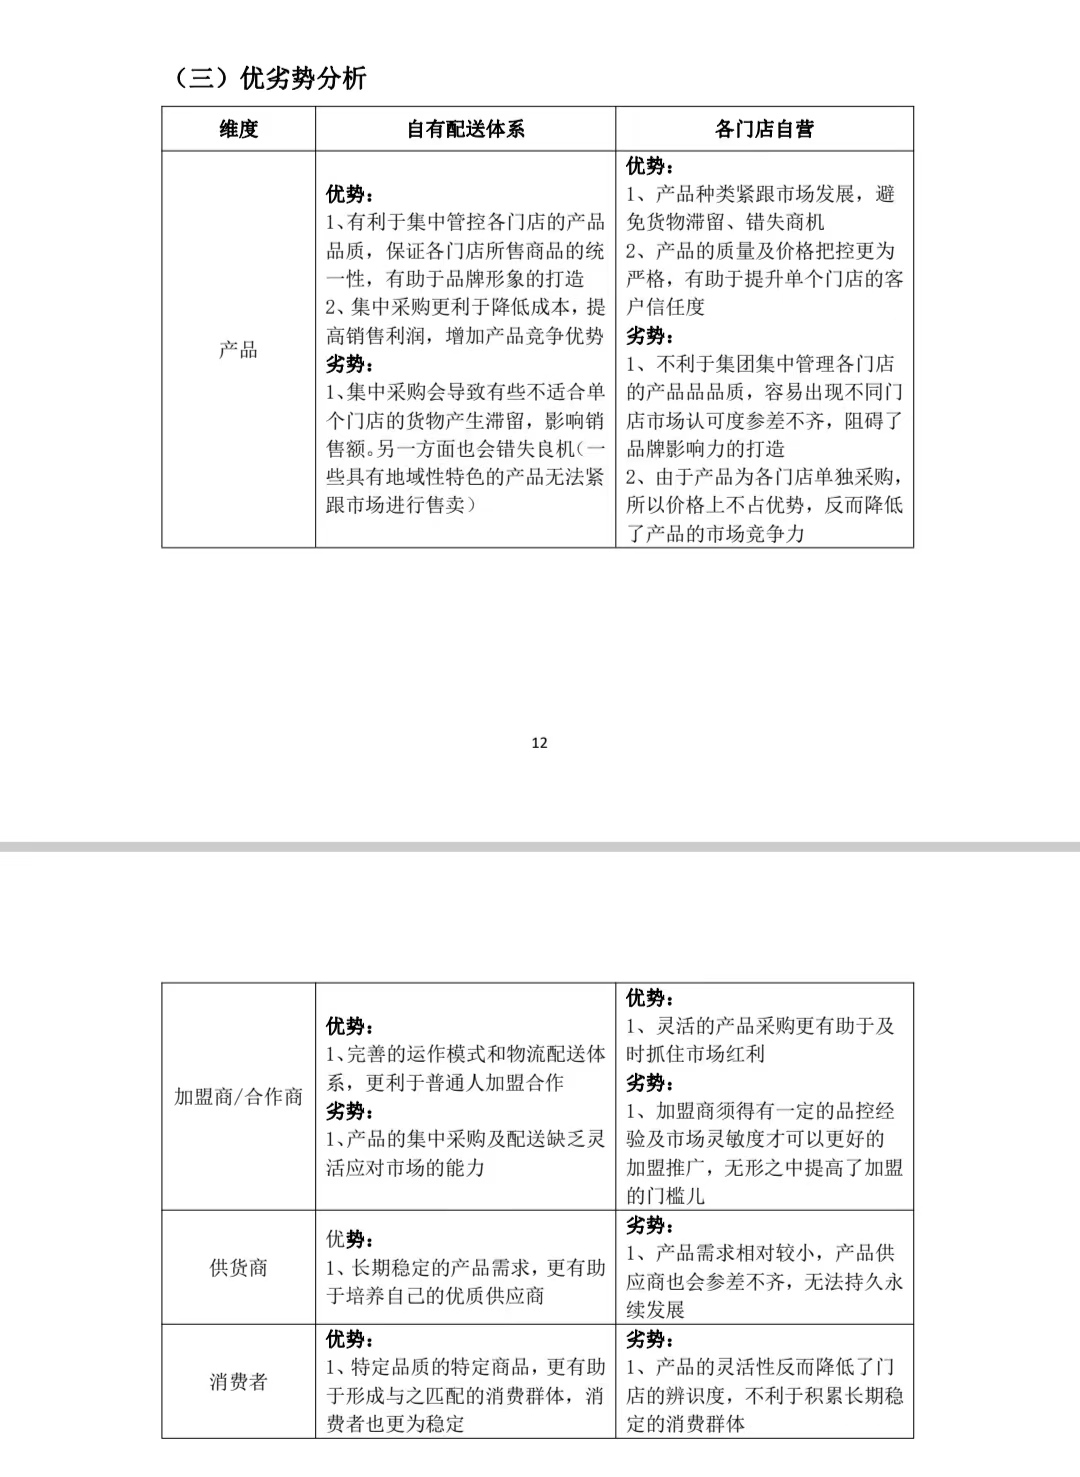 济南市连锁超市配送情况调查及开展**直配的建议图5